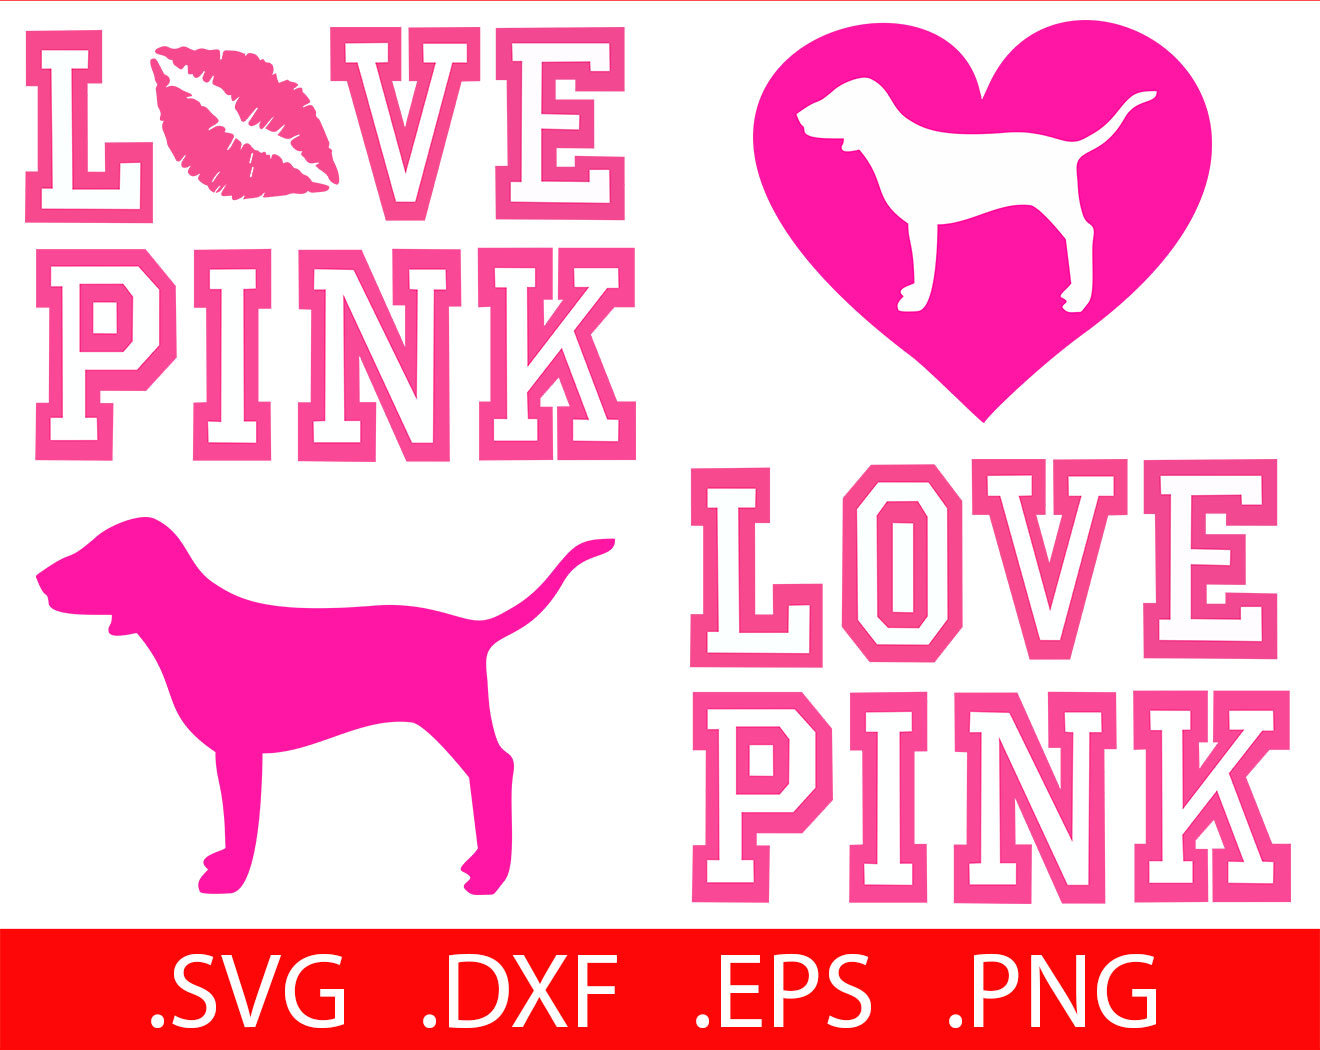 Love pink Logos